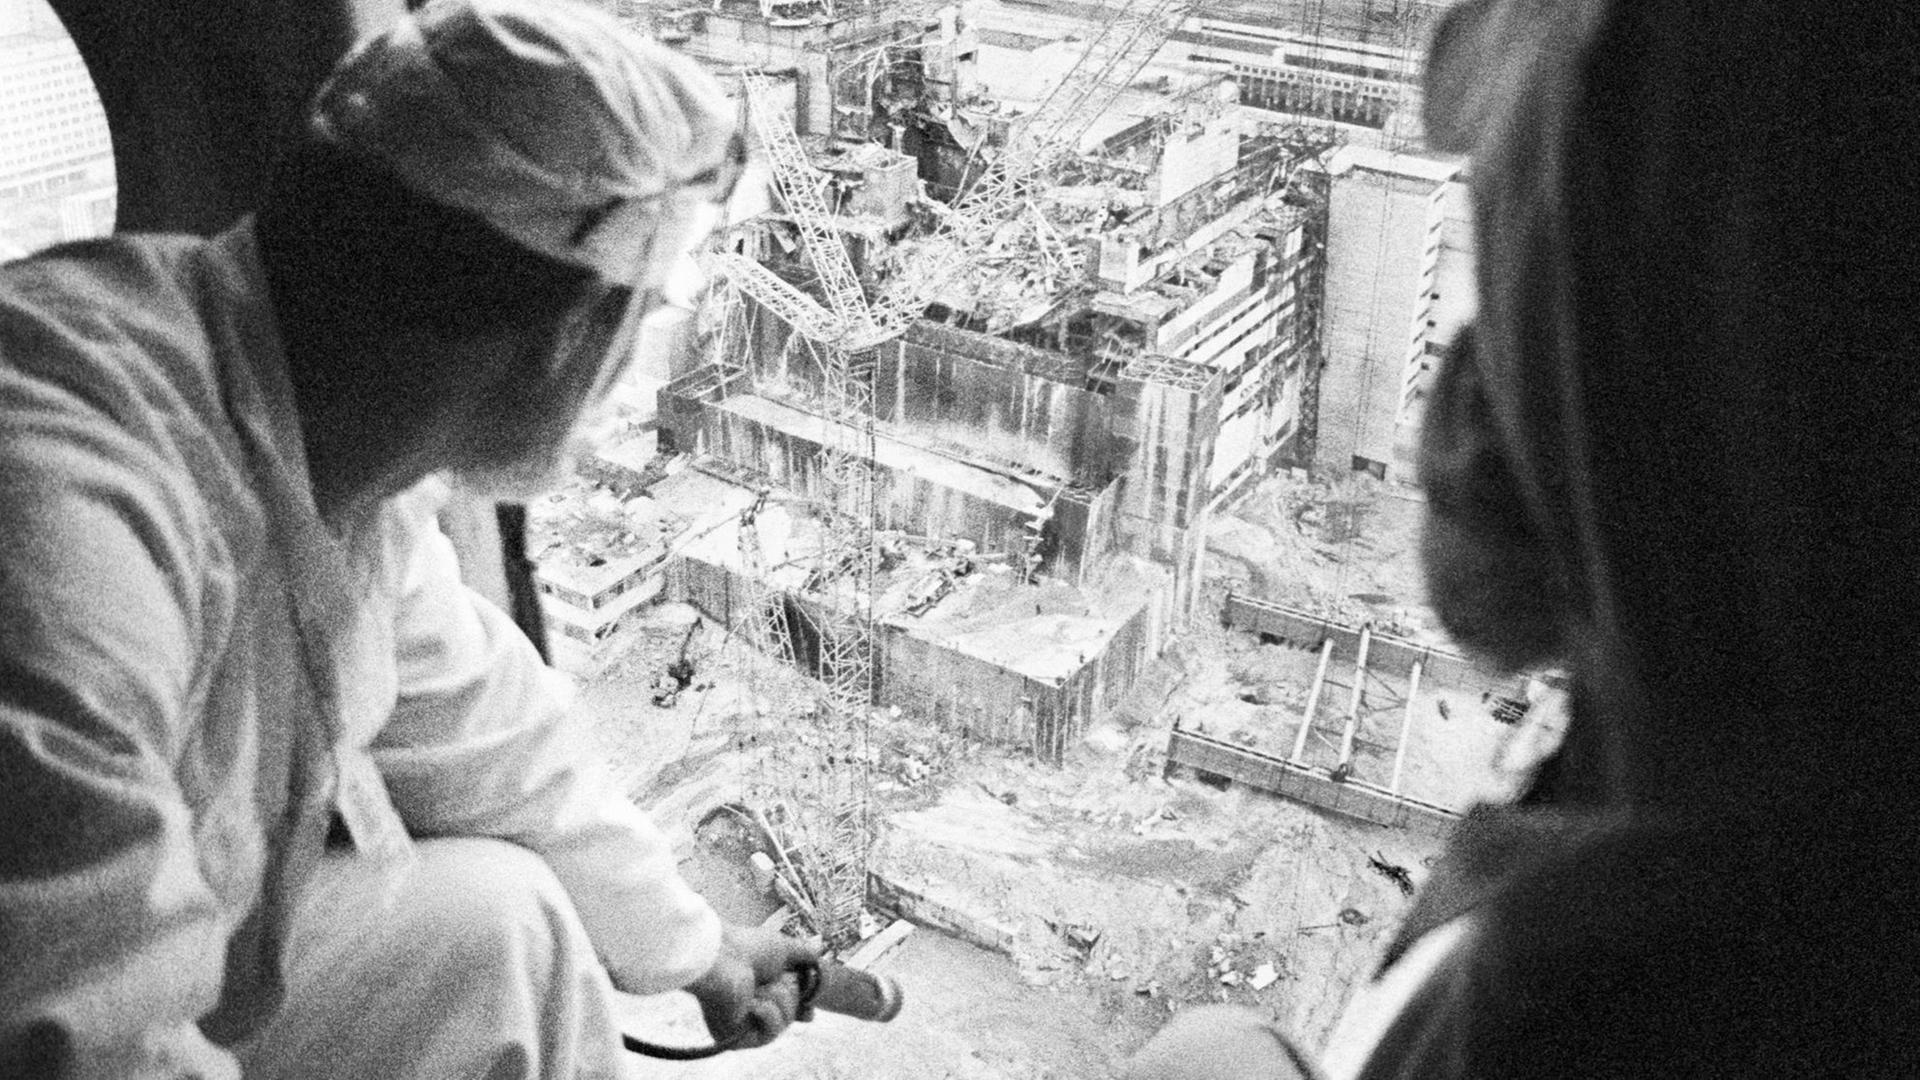 Fachleute messen vom Helikopter aus die radioaktive Strahlung der Atomkraftwerks in Tschernobyl nach dem Reaktorunfall 1986.